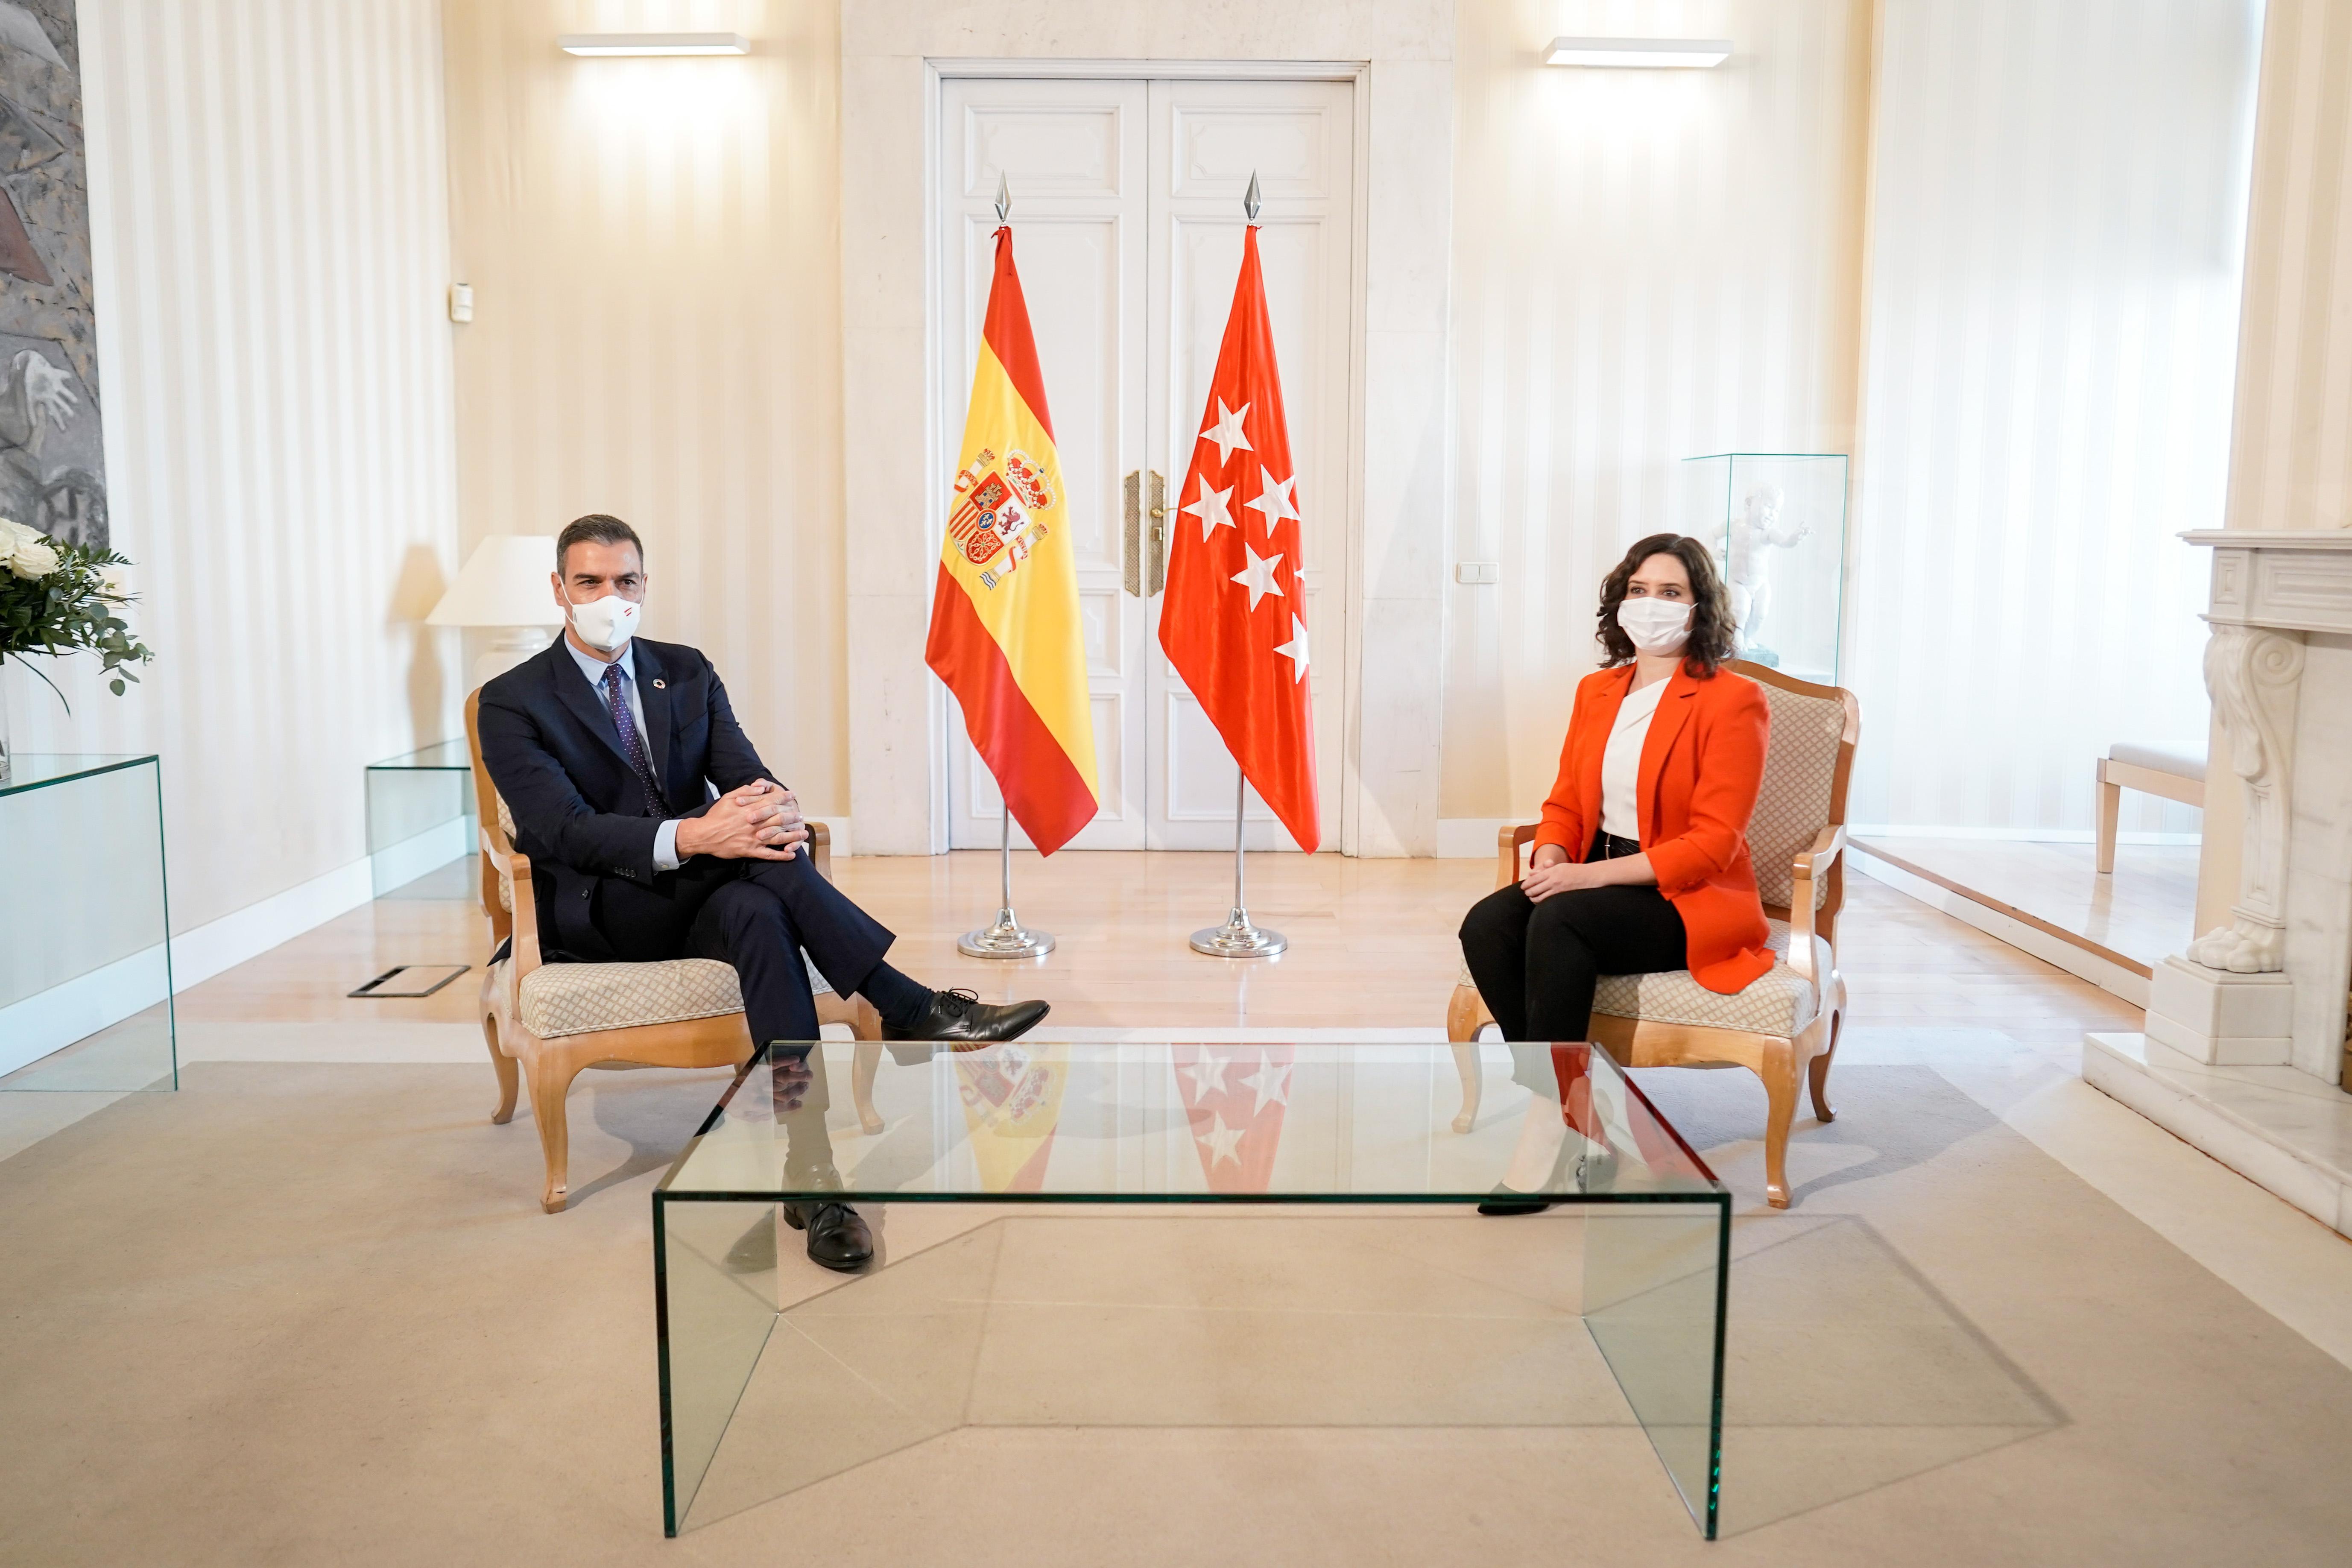  El presidente del Gobierno, Pedro Sánchez, y la presidenta de la Comunidad de Madrid, Isabel Díaz Ayuso